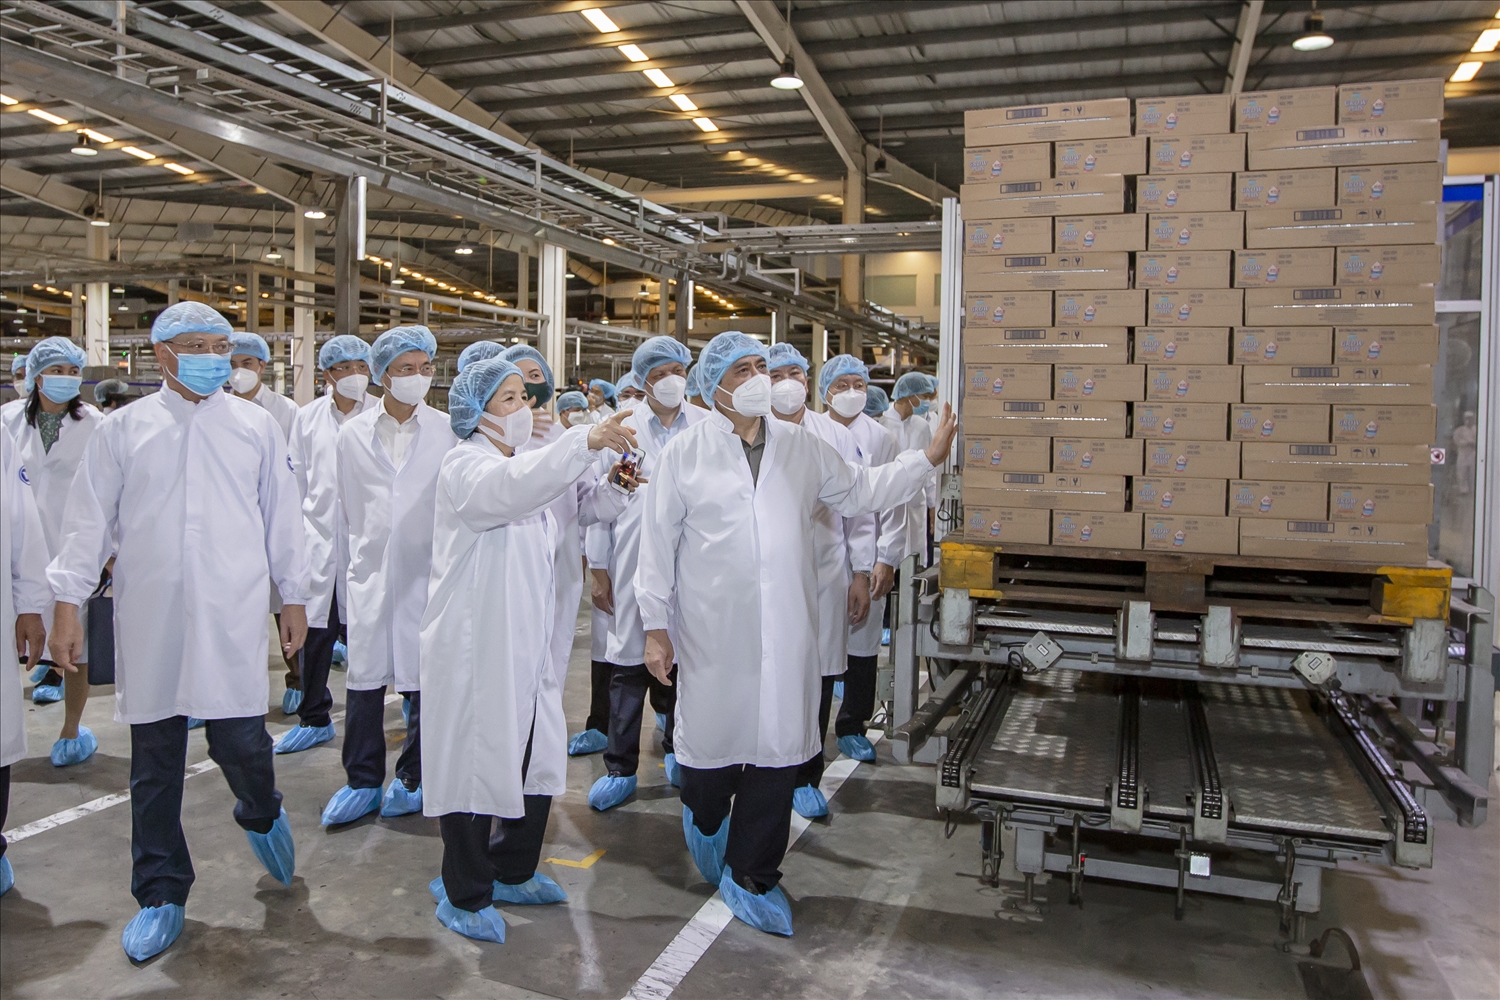 Thủ tướng Chính phủ đánh giá cao việc thực hiện “mục tiêu kép” của Vinamilk trong chuyến làm việc tại Nhà máy sữa Việt Nam (Bình Dương)